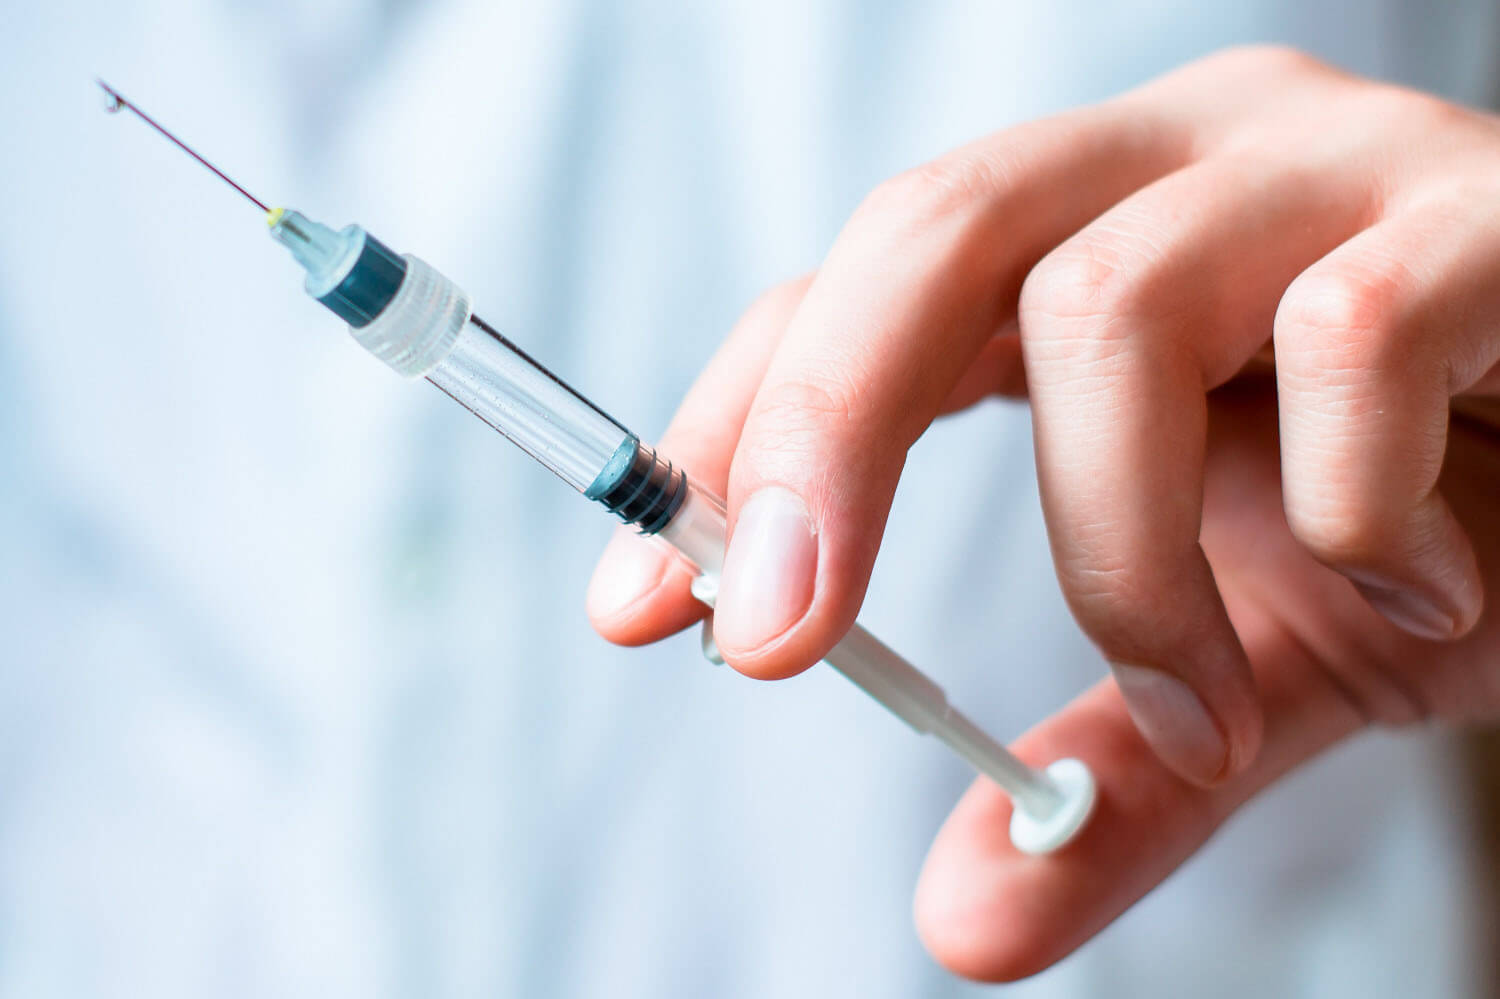 Ослабляет ли вакцинация иммунитет?